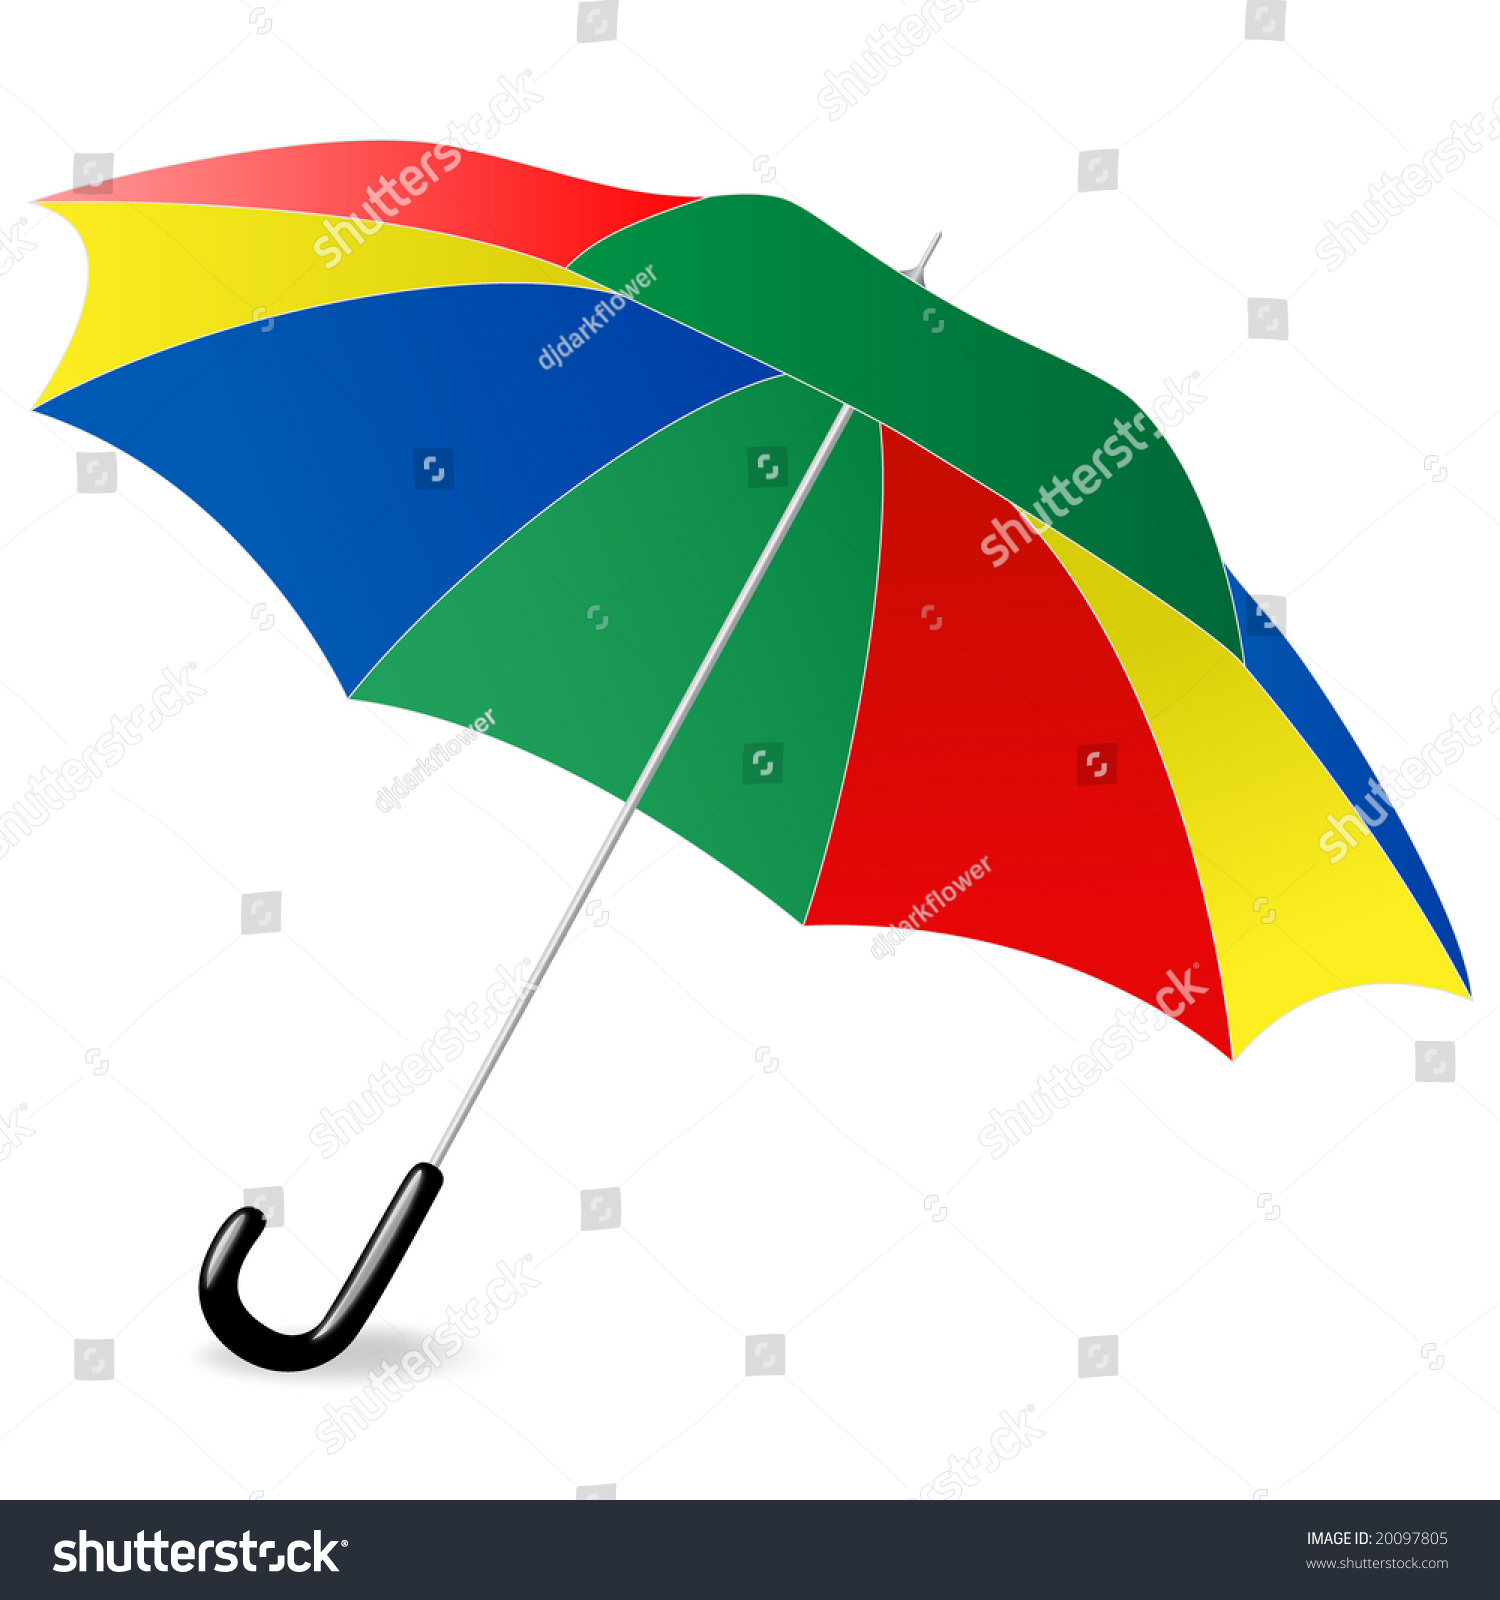 Umbrella Stock Illustration 20097805 | Shutterstock